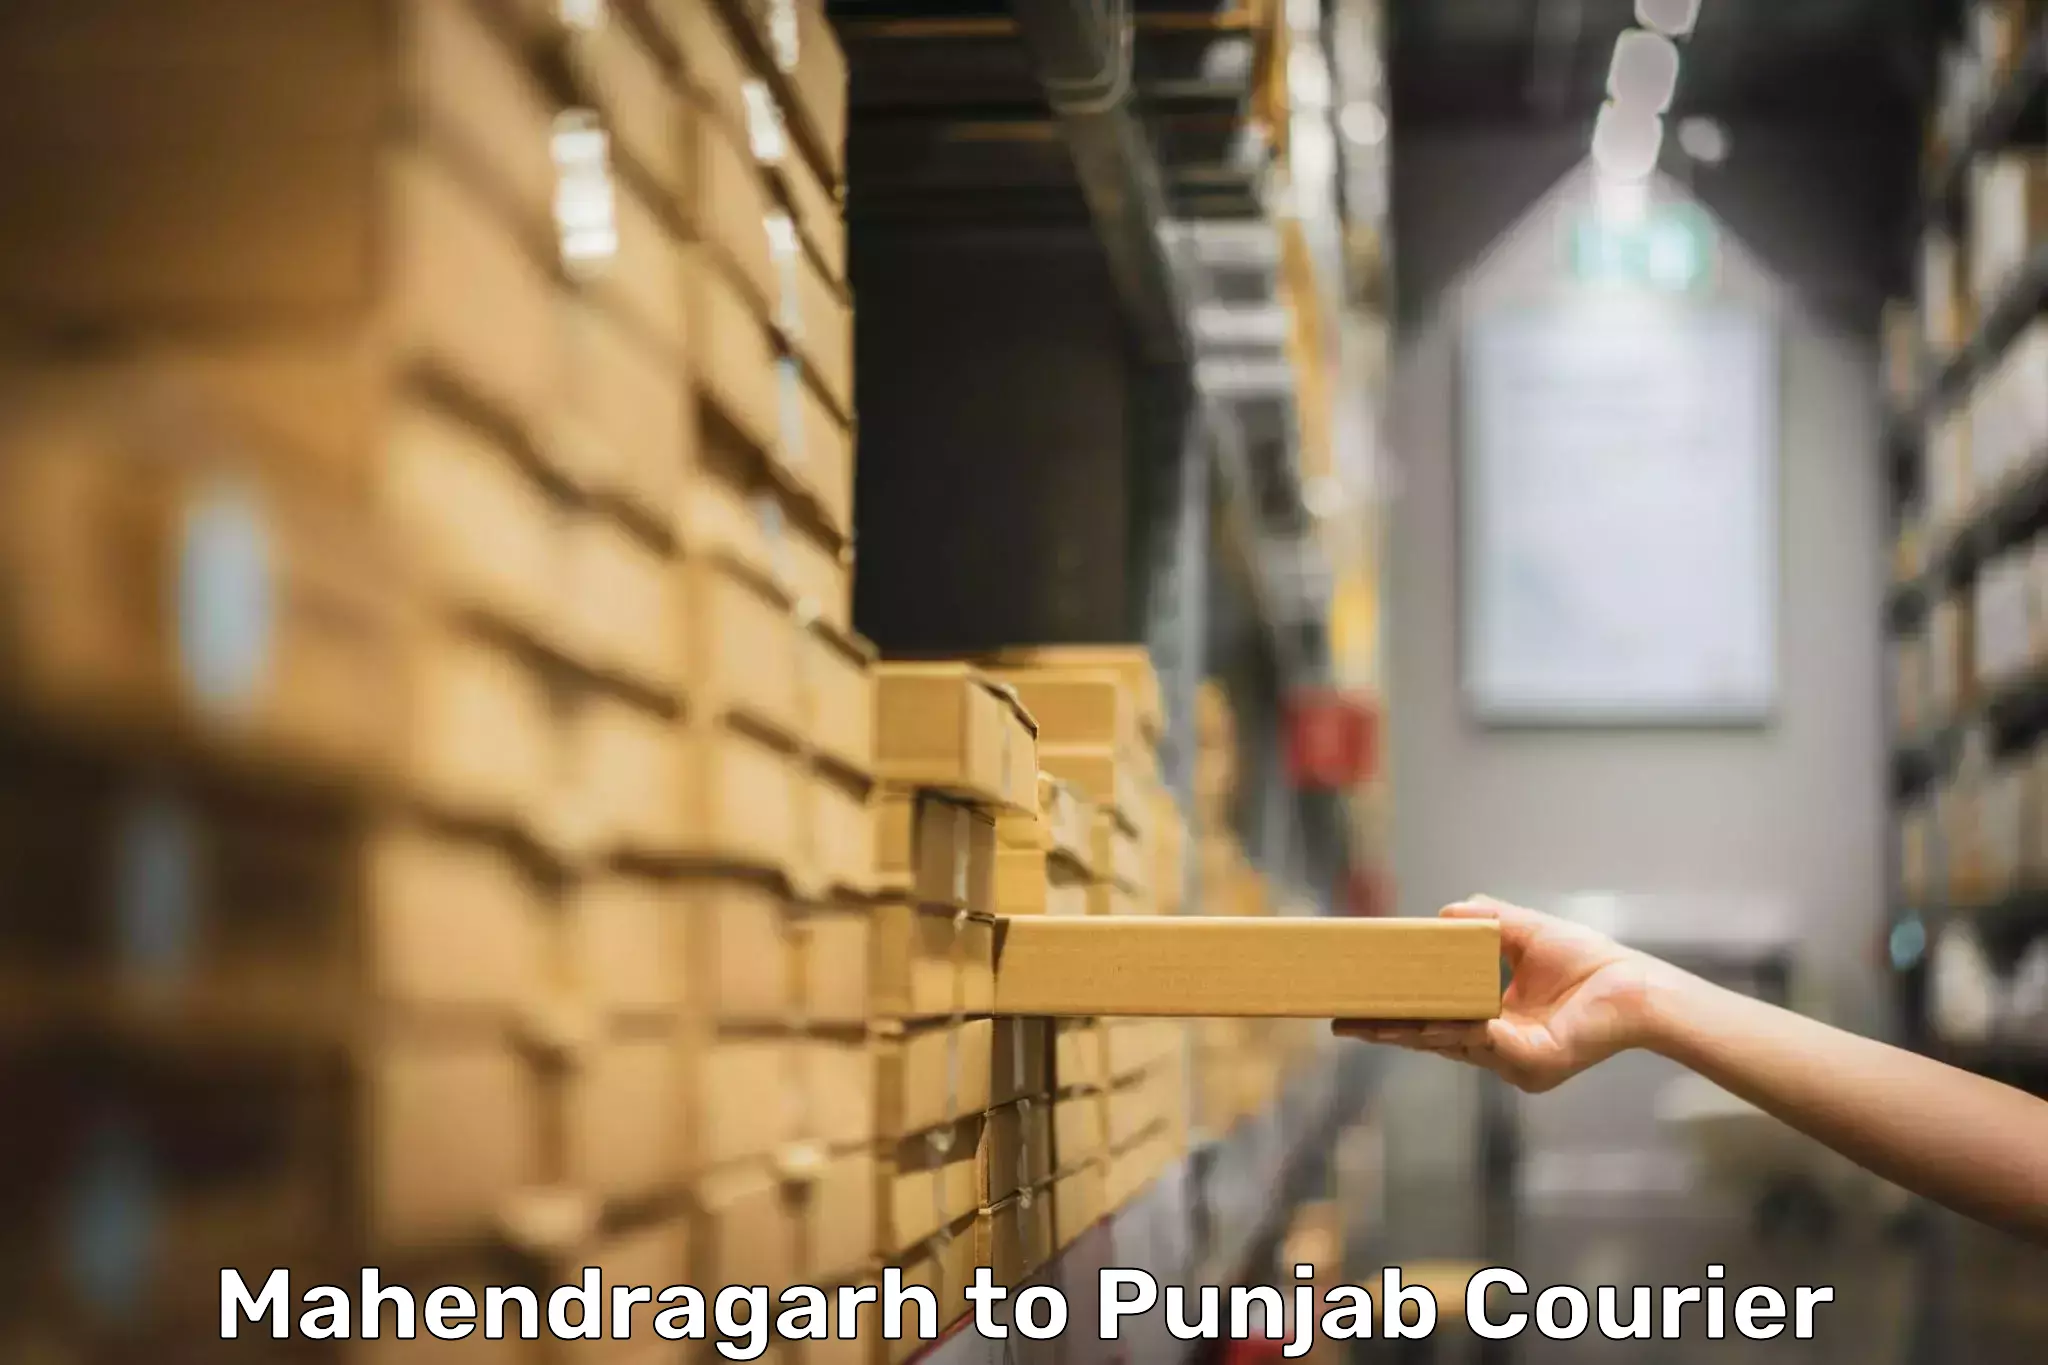 Baggage shipping service Mahendragarh to Punjab